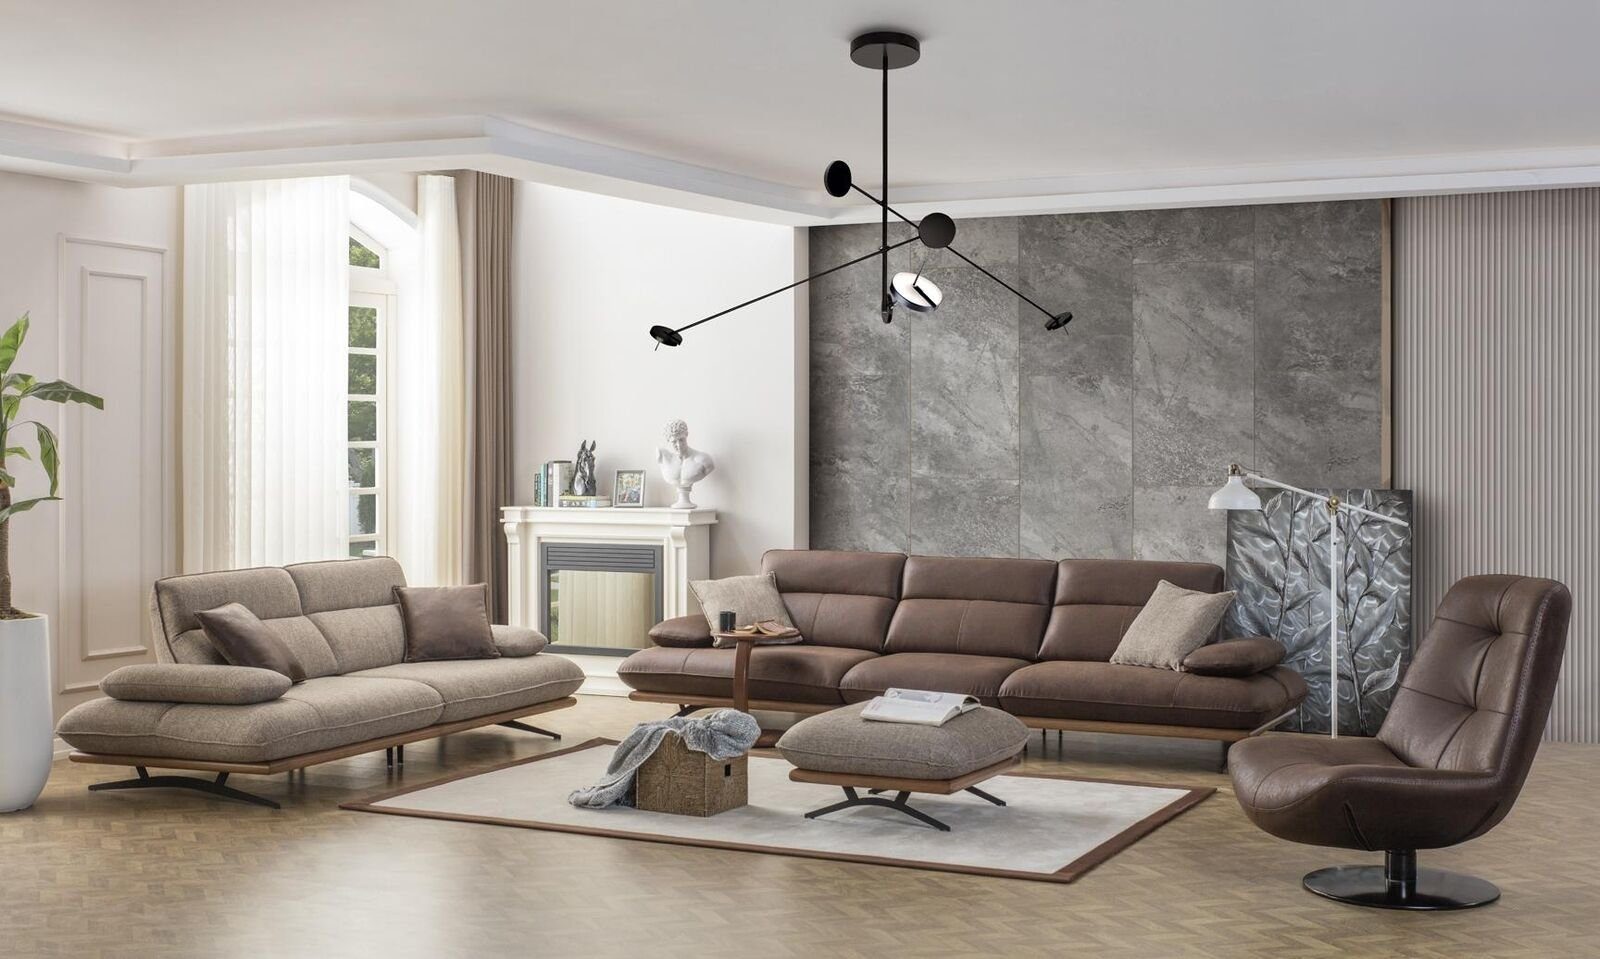 Sofa Wohnzimmer Sofas Grau Sitzer 1 3 Sitz Modern, Dreisitzer Stoff JVmoebel Luxus Sofa Teile